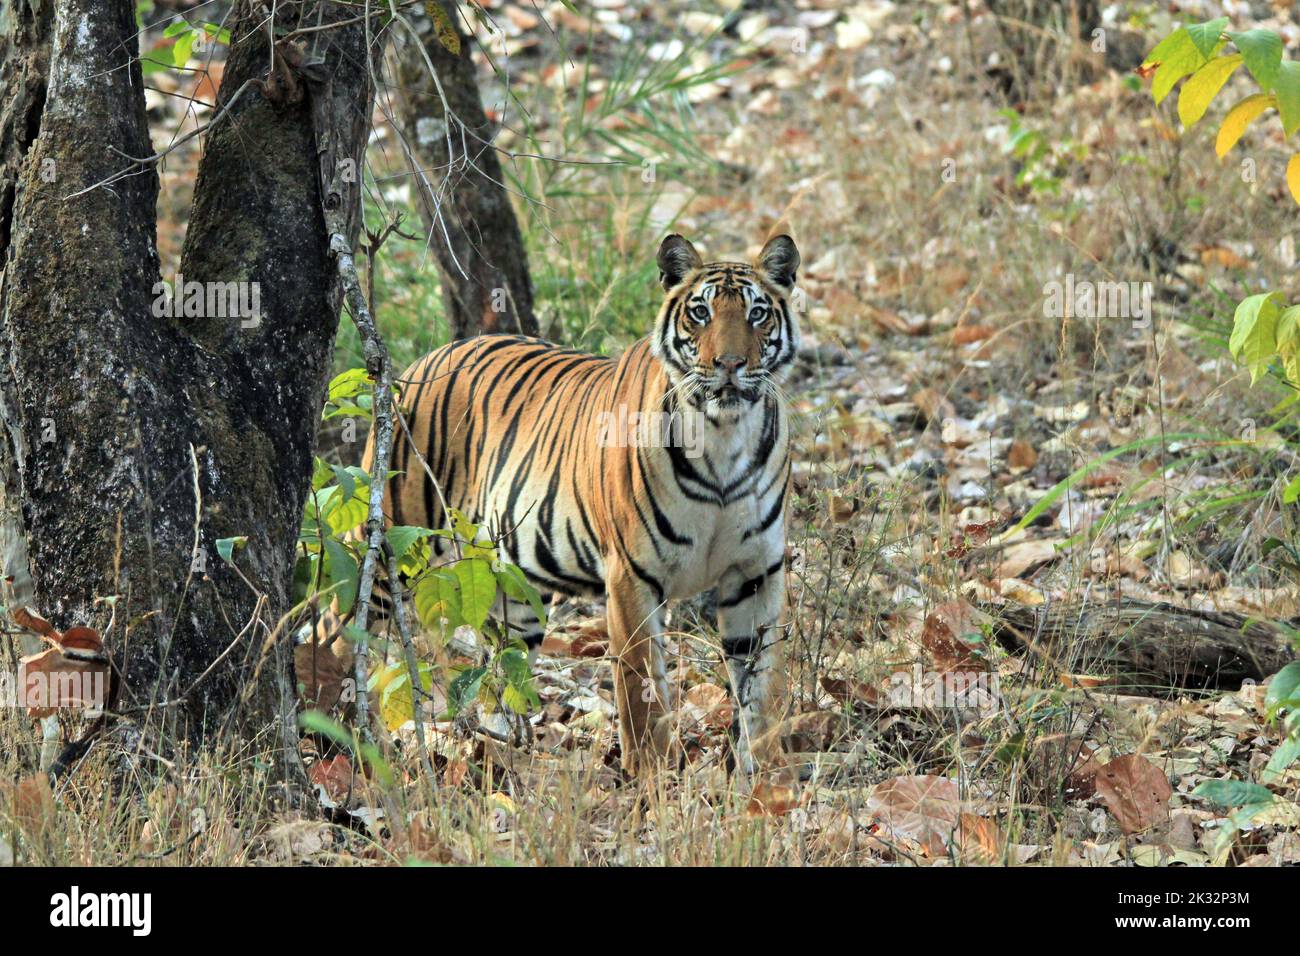 Tigre du Bengale (Panthera tigris tigris) dans la nature, regardant dans la caméra. Bandhavgarh, Inde Banque D'Images